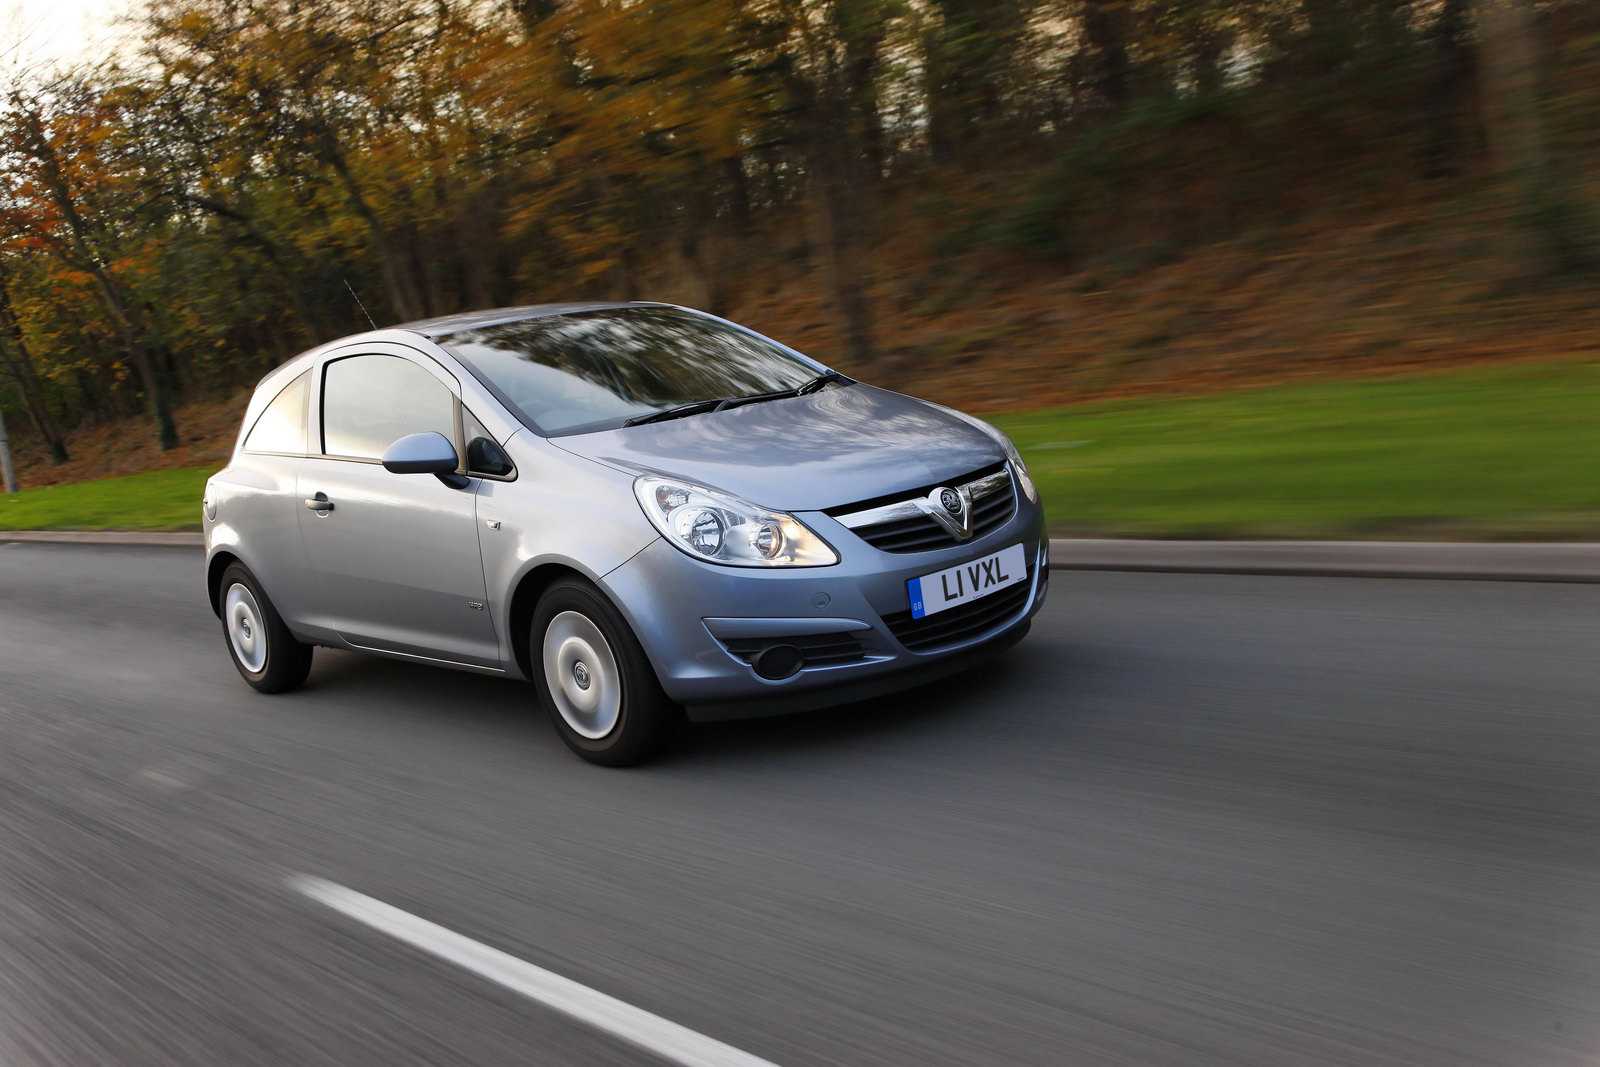 Opel corsa 2008 года, 1.6 литра, машиной владею около 5 месяцев, но corsa у меня уже четвертая по счету, бензин, краснодар, механическая коробка передач